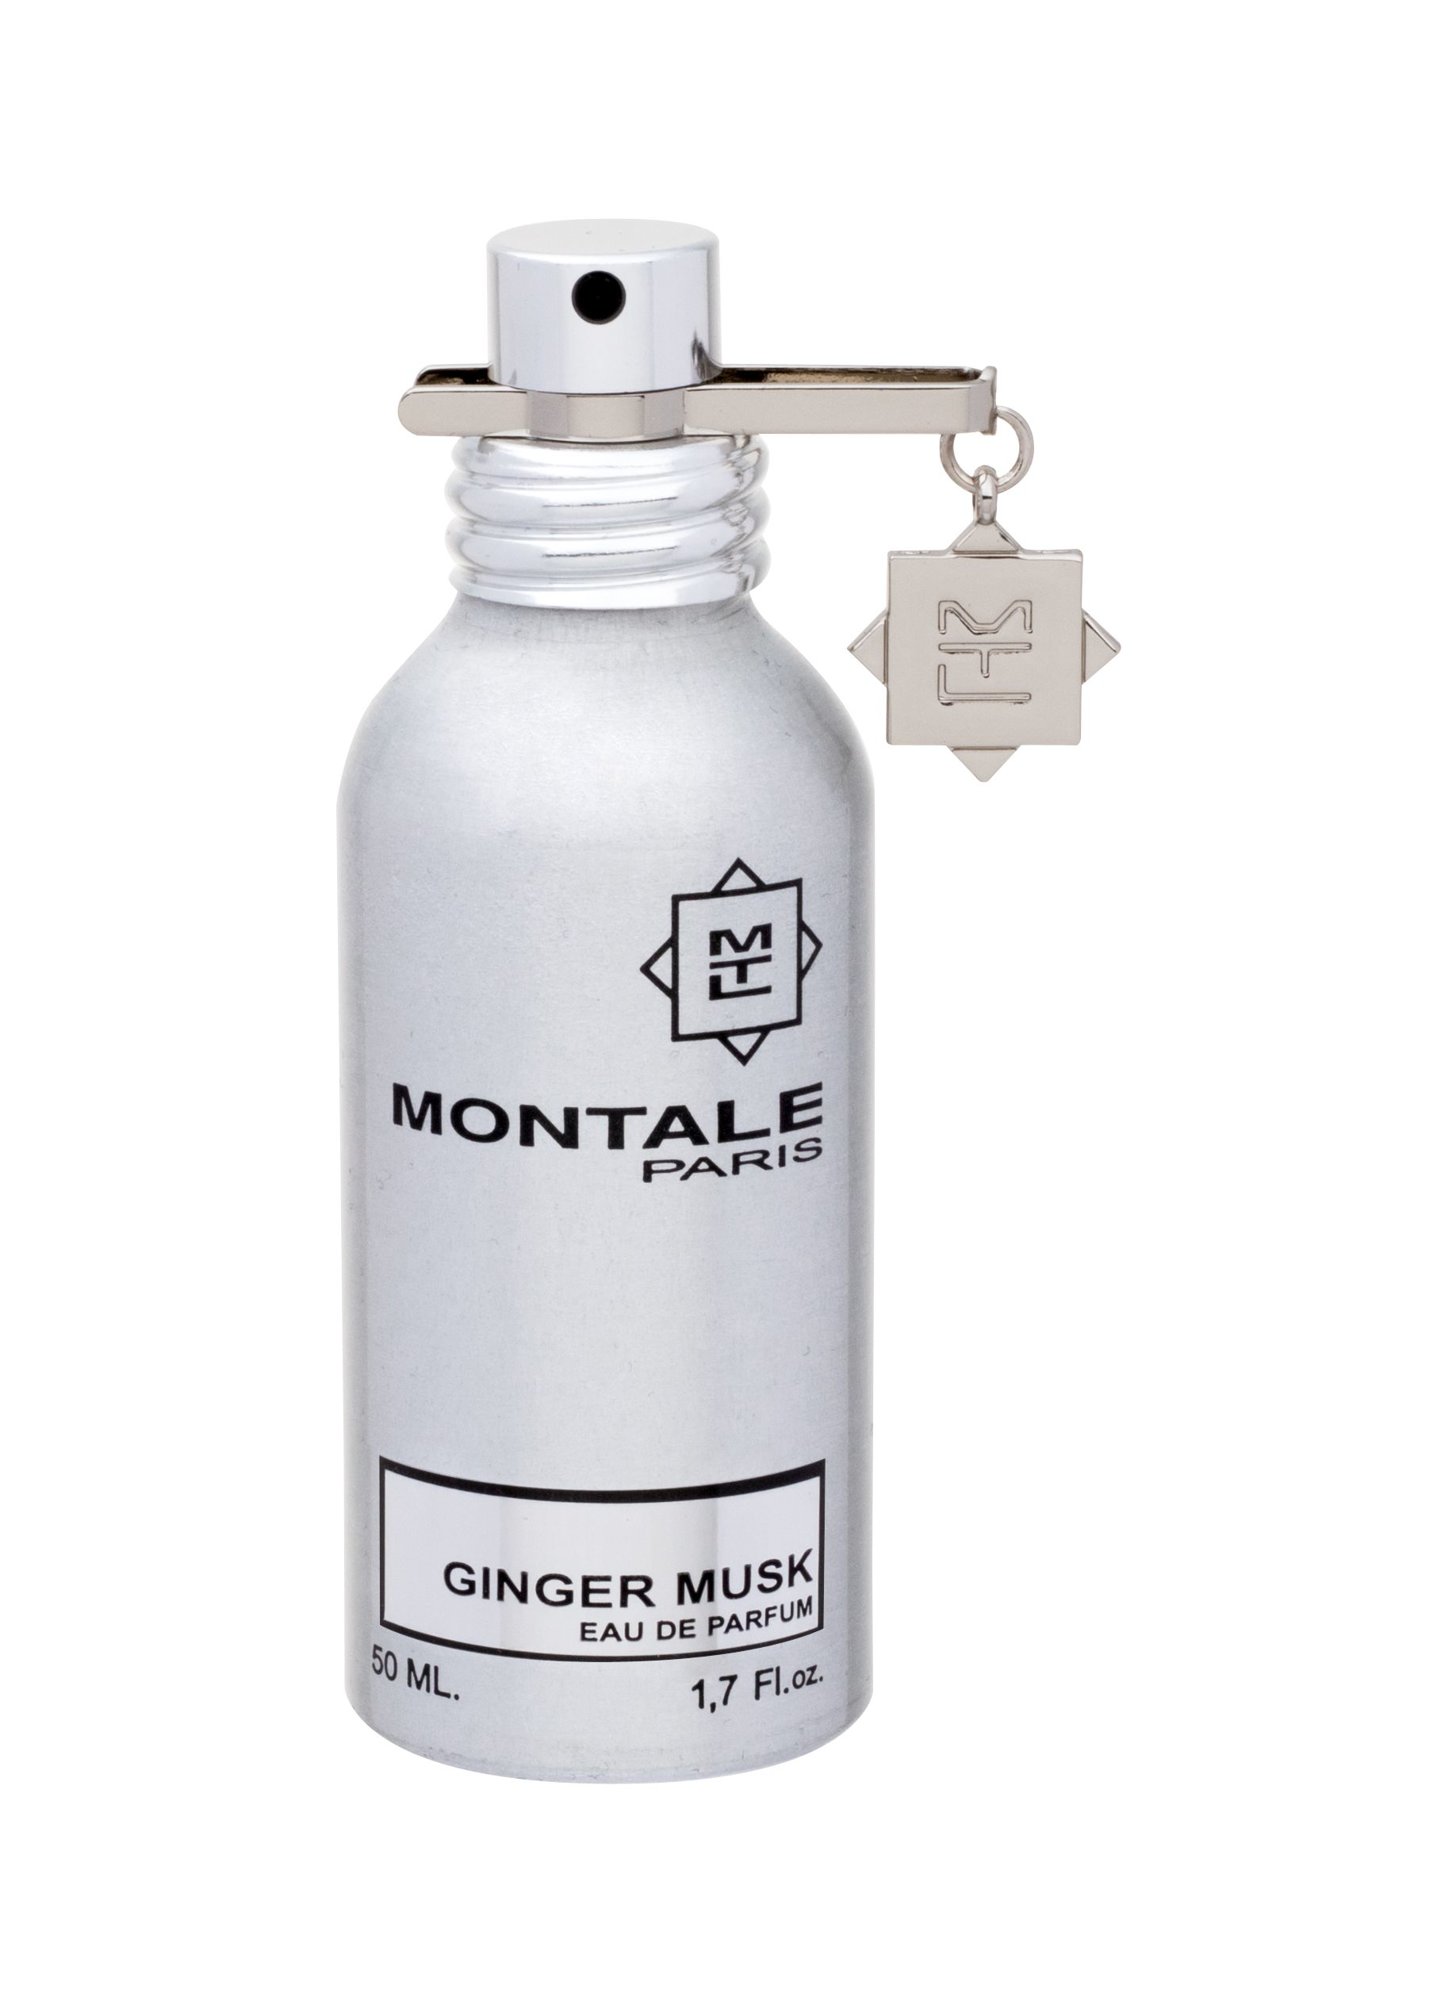 Montale Paris Ginger Musk 50ml NIŠINIAI Kvepalai Unisex EDP